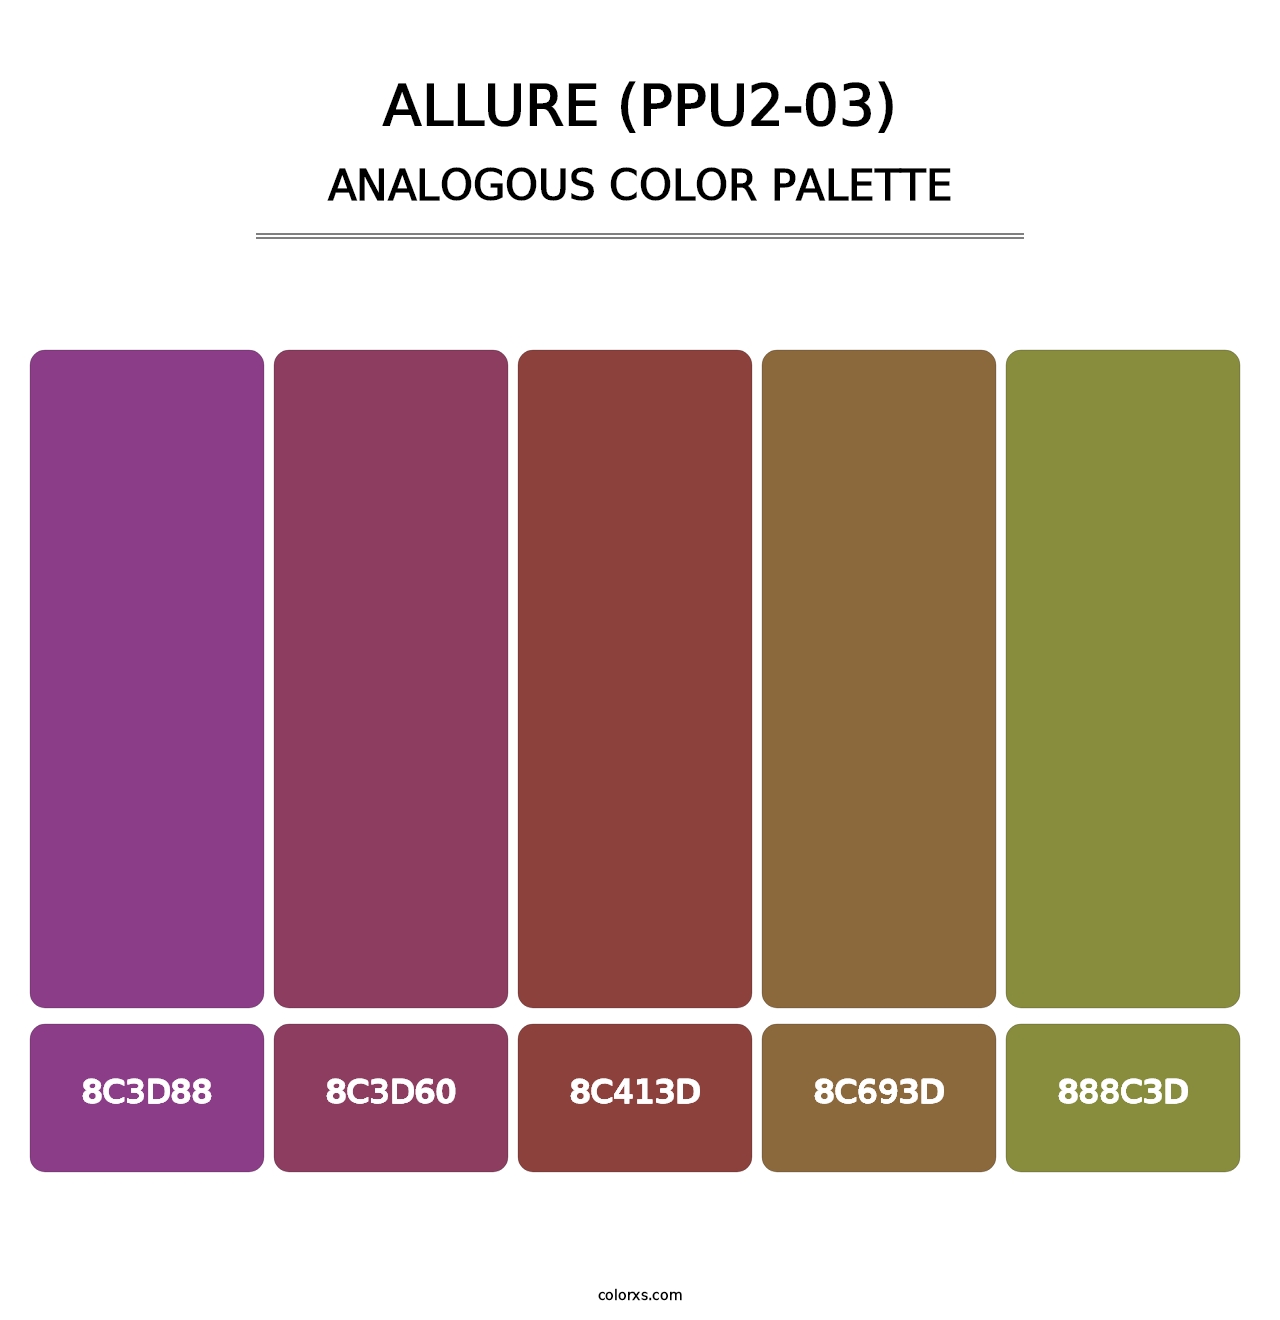 Allure (PPU2-03) - Analogous Color Palette